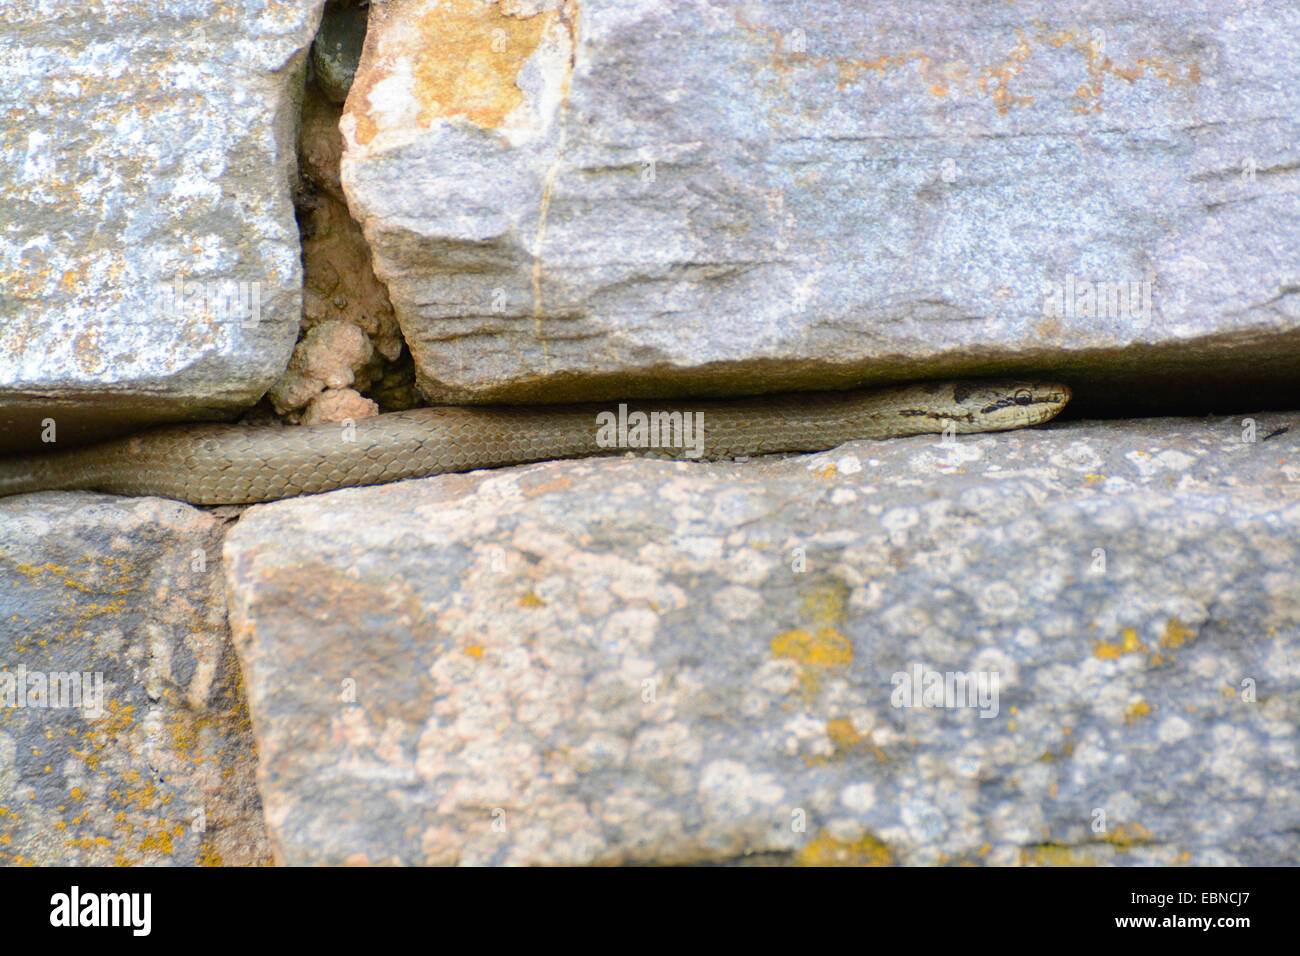 Schlingnatter (Coronella Austriaca), zwischen den Steinen eine Trockenmauer, Deutschland, Nordrhein-Westfalen Stockfoto